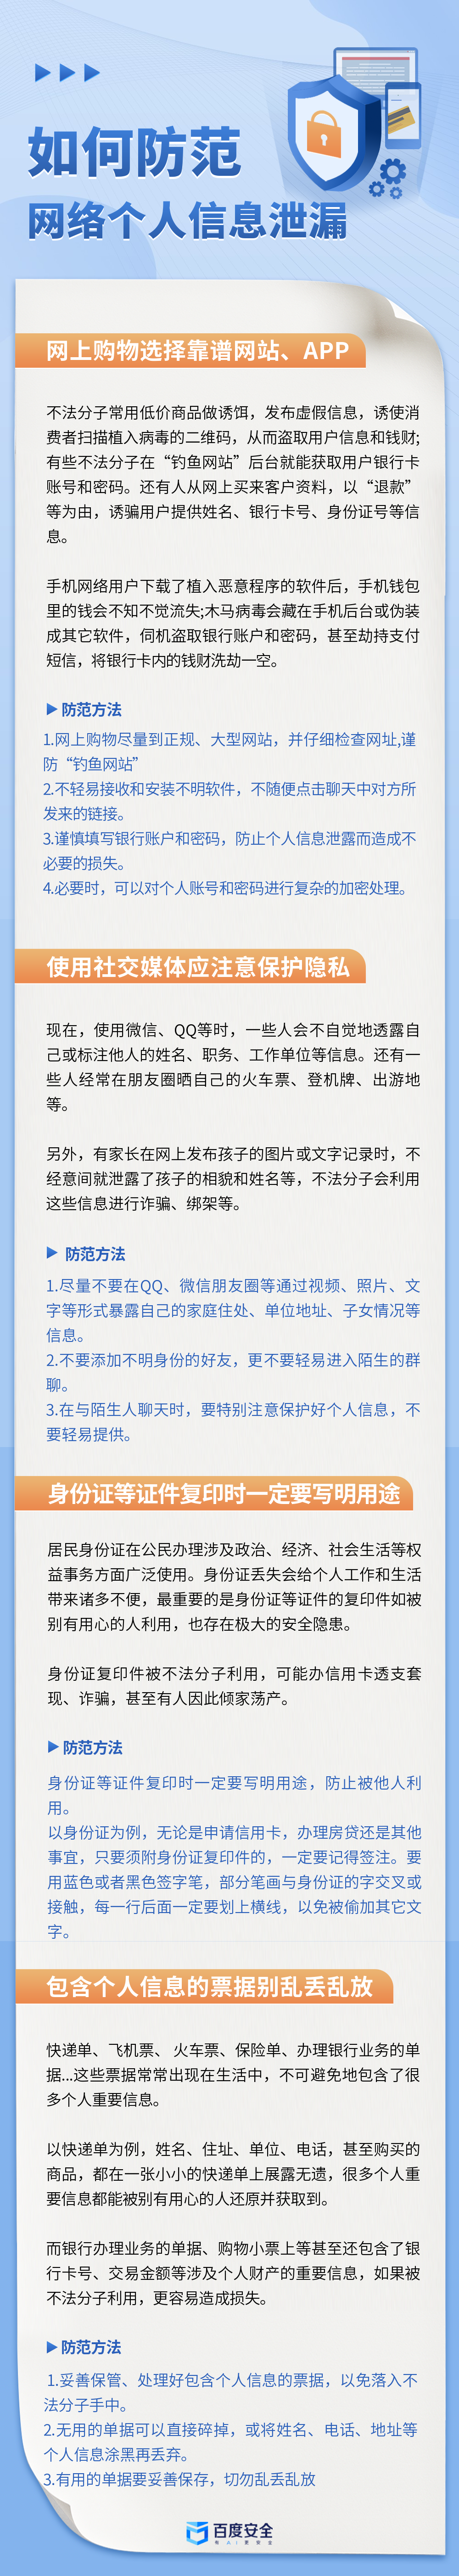 防范个人信息泄漏诈骗科普文章长图.png